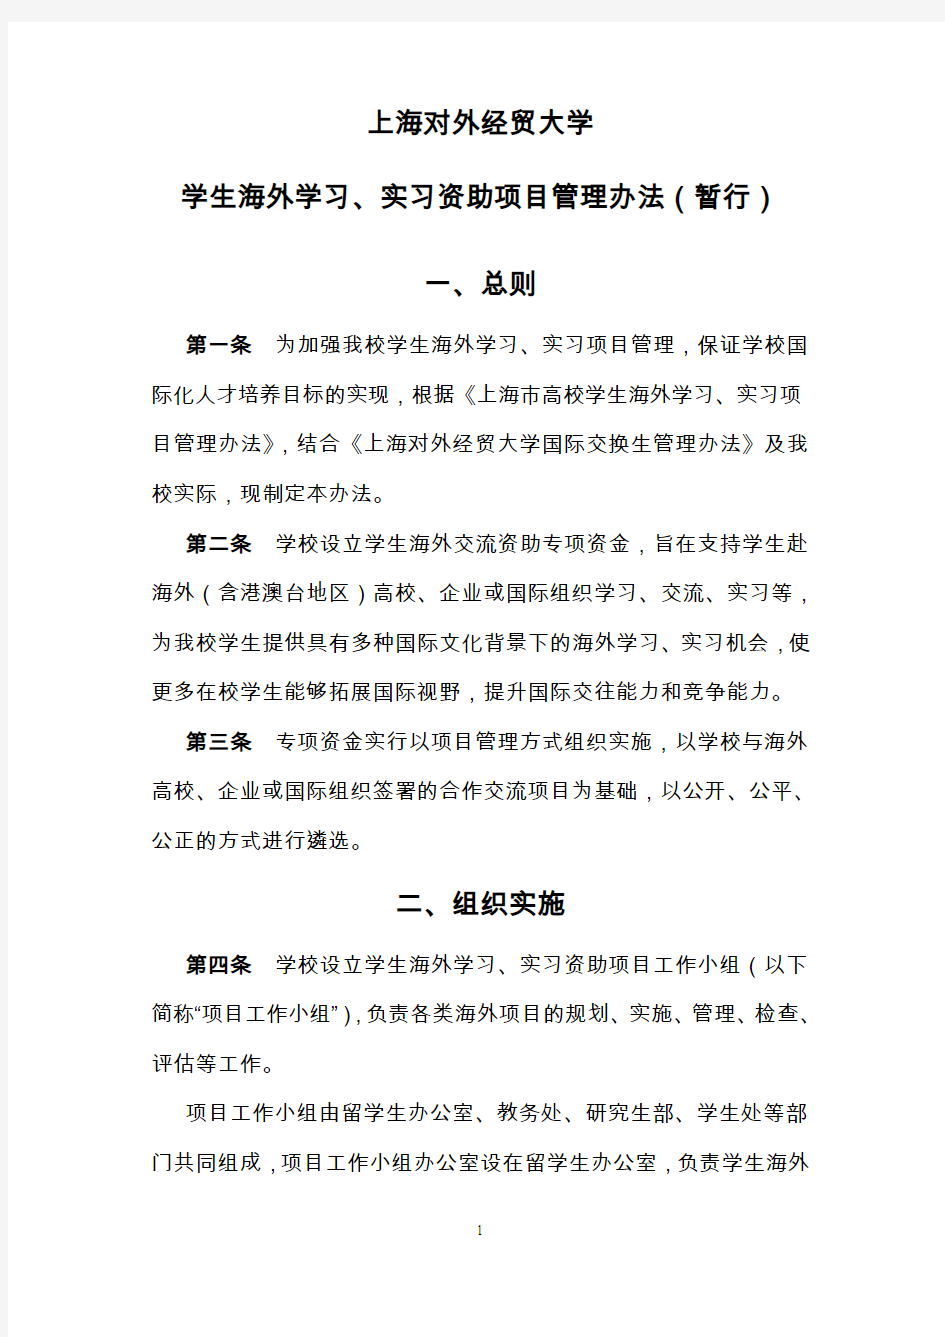 上海外贸学院交换生资助管理办法-上海对外经贸大学